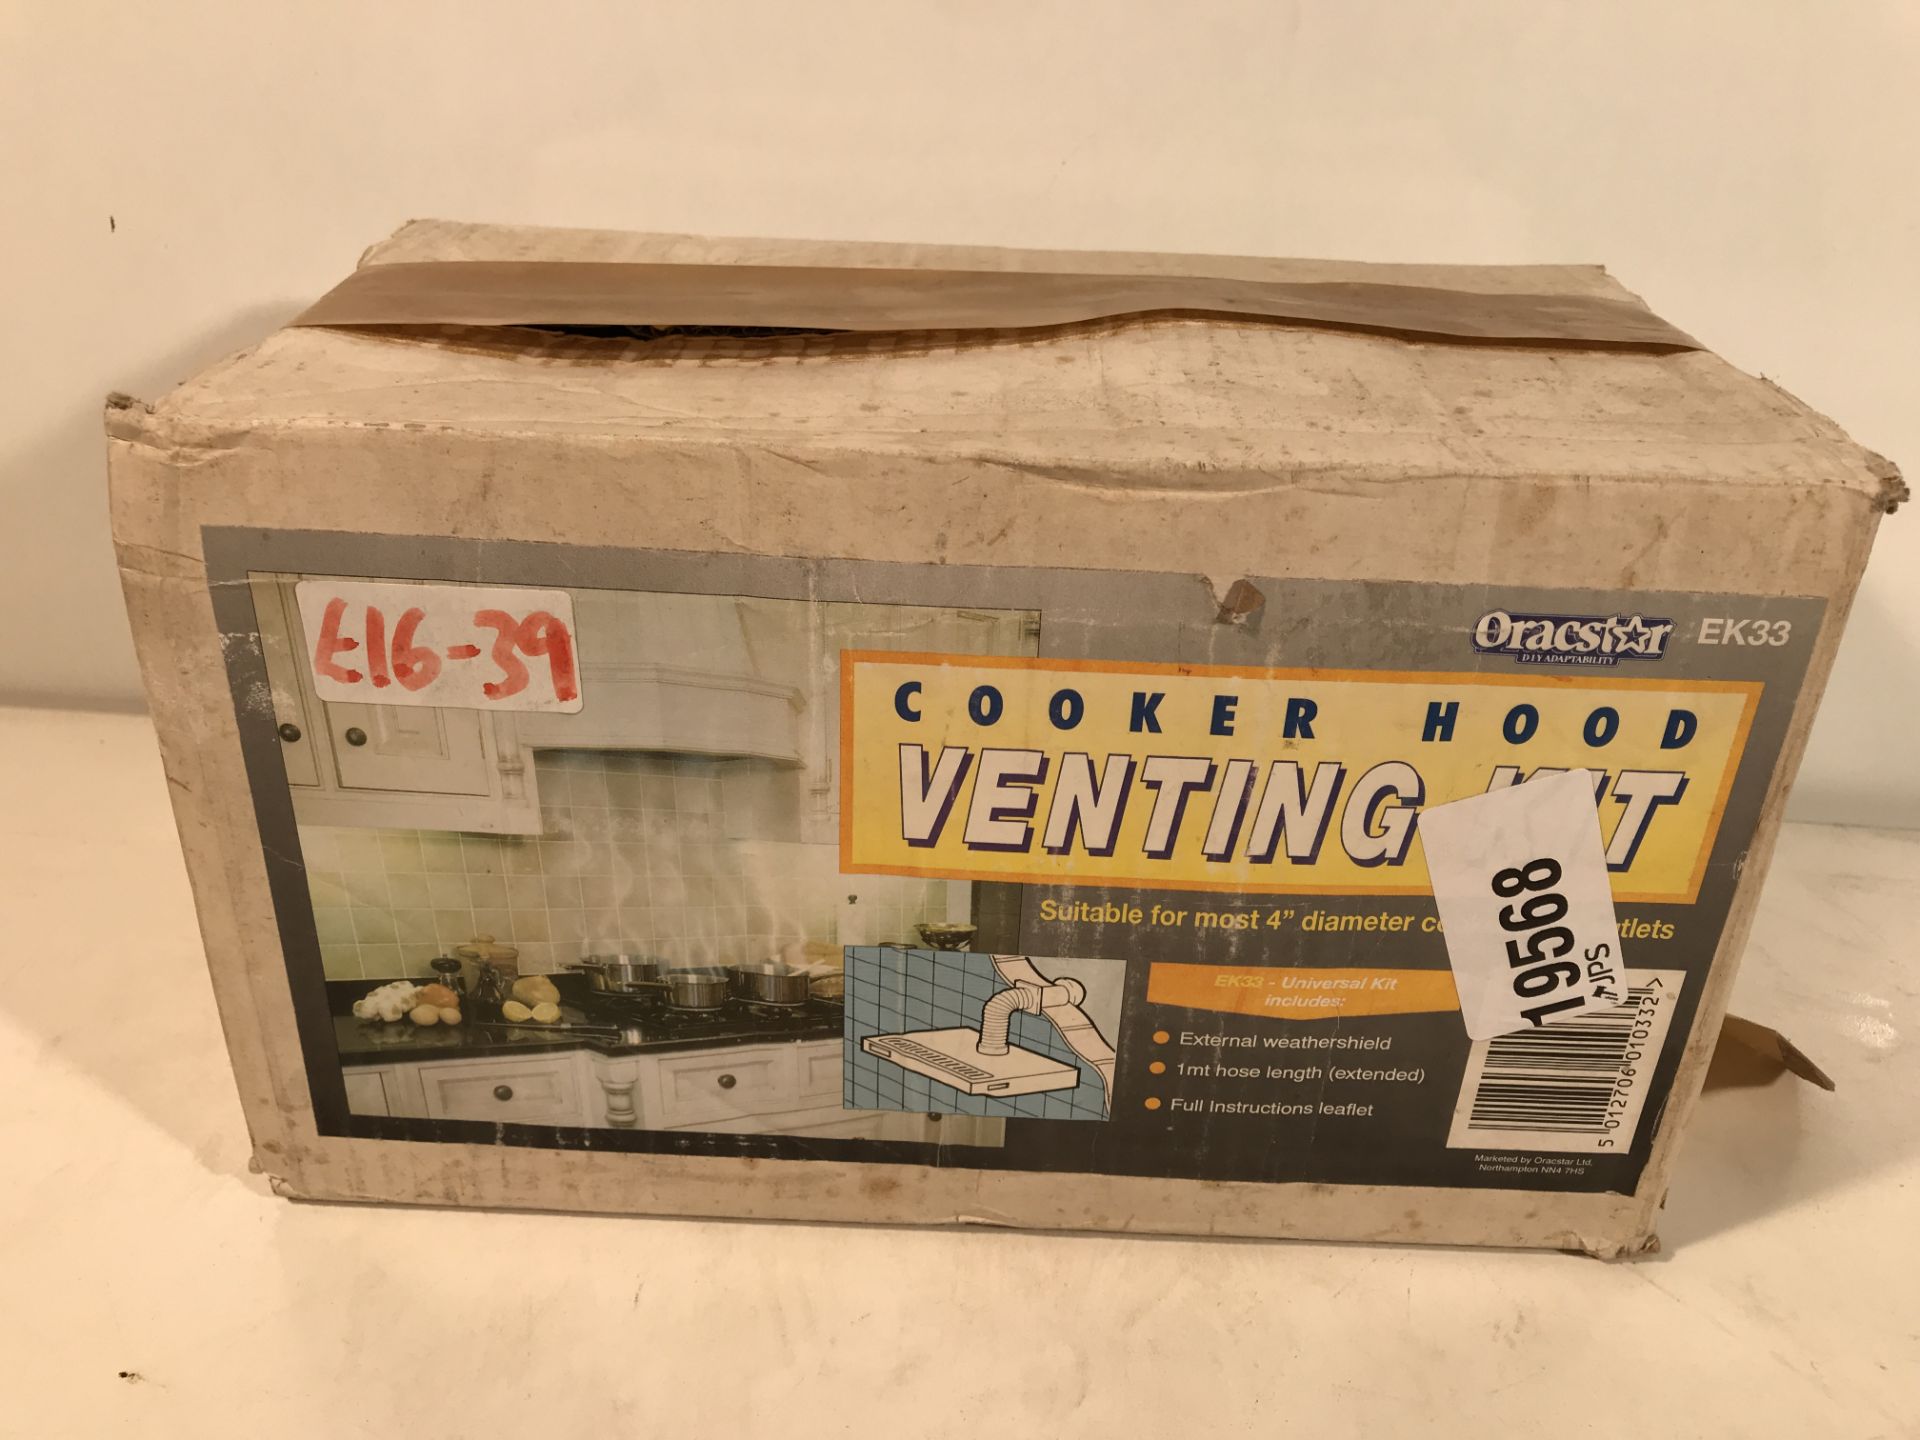 Cooker Hood Venting Kit